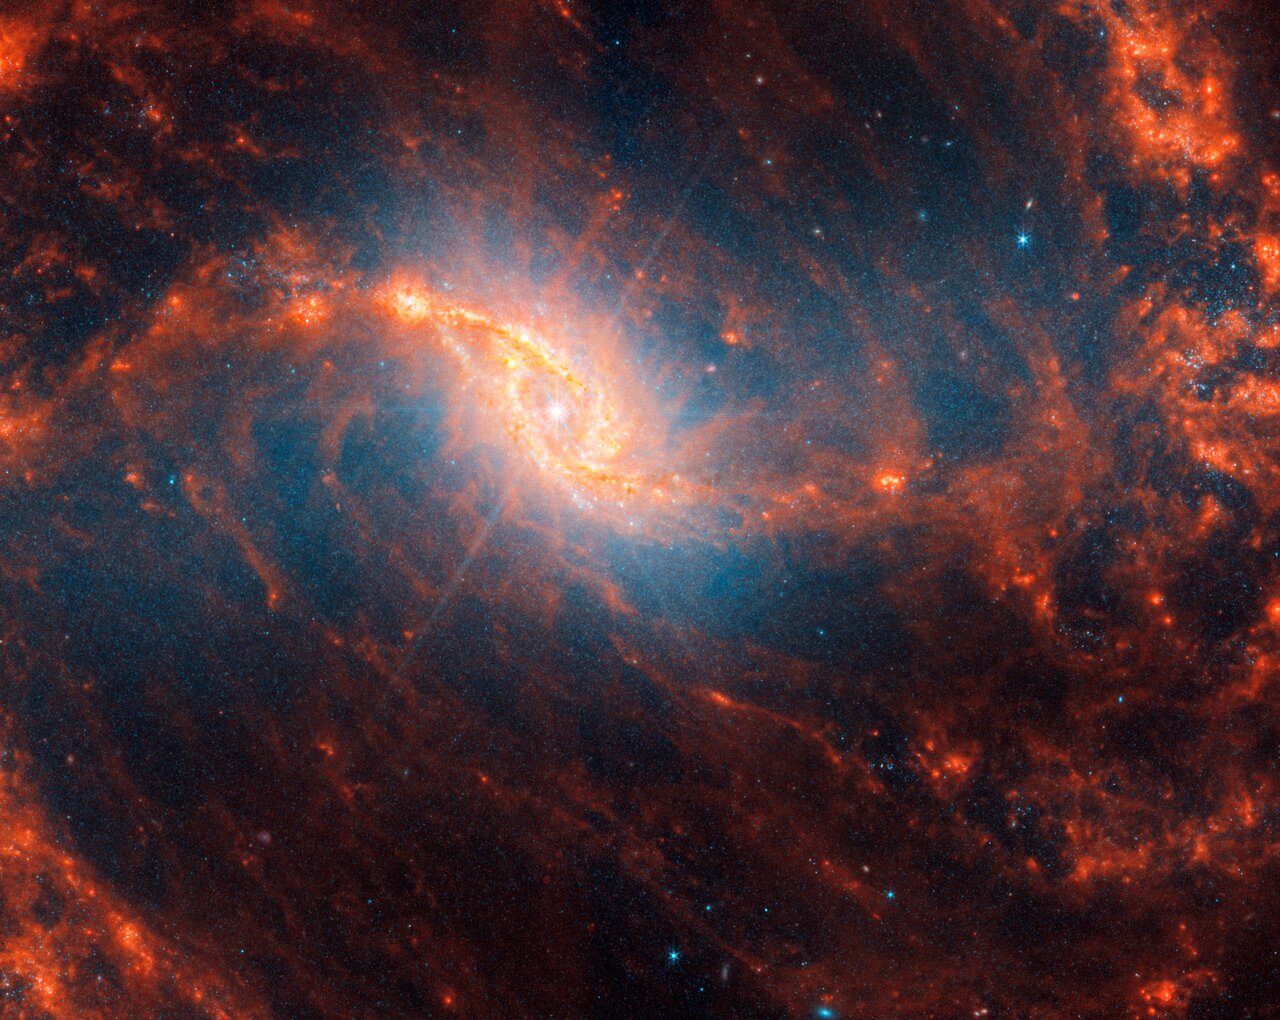 Galáxia espiral NGC 1365, localizada a 56 milhões de anos-luz de distância, na constelação de Fornax.